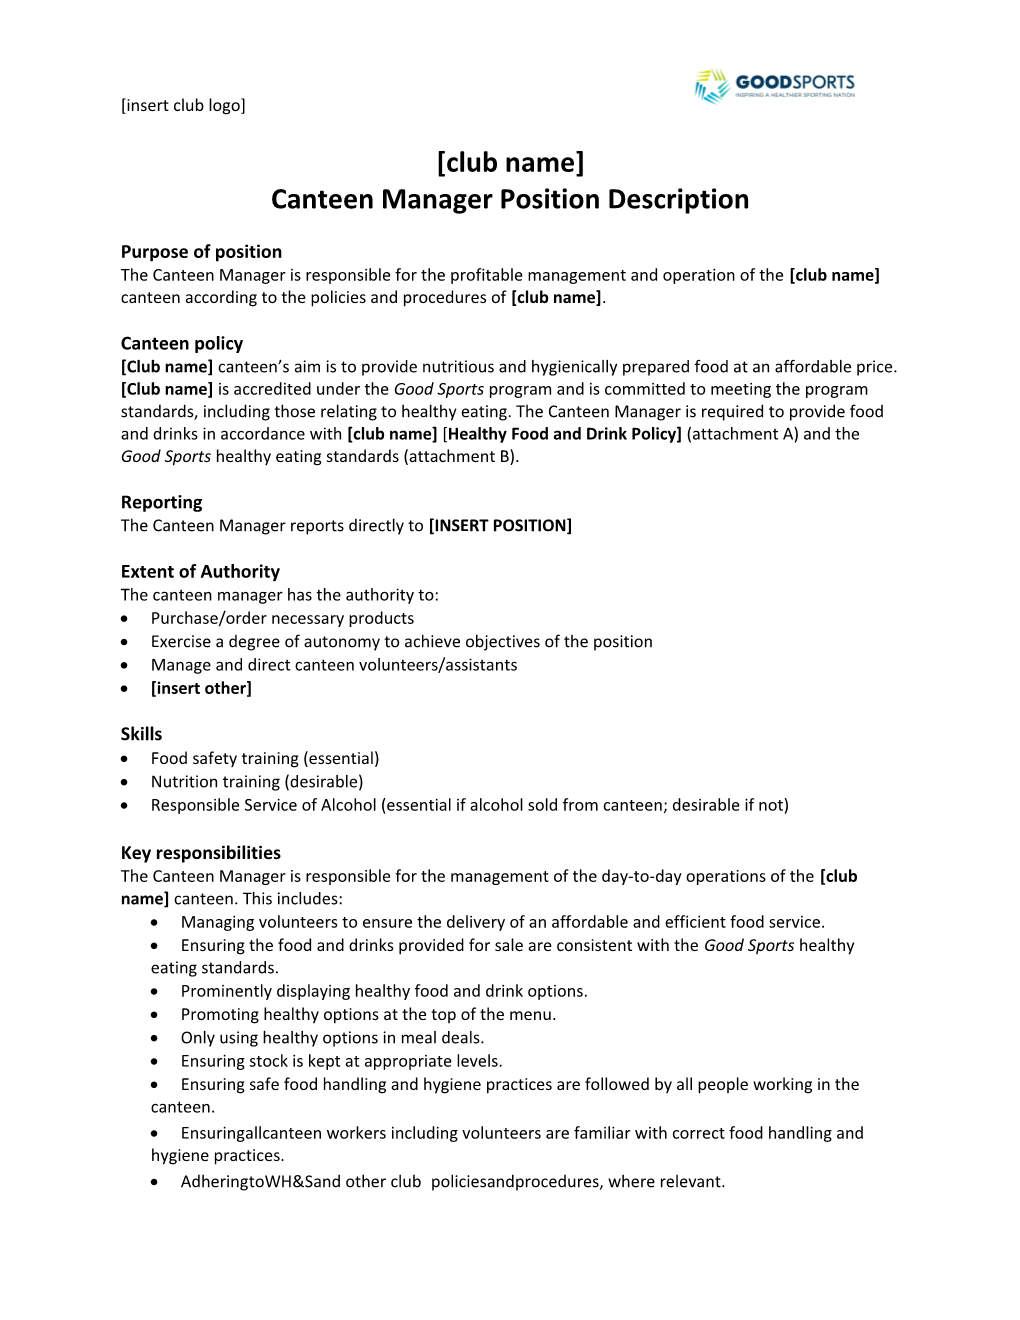 Canteen Manager Position Description